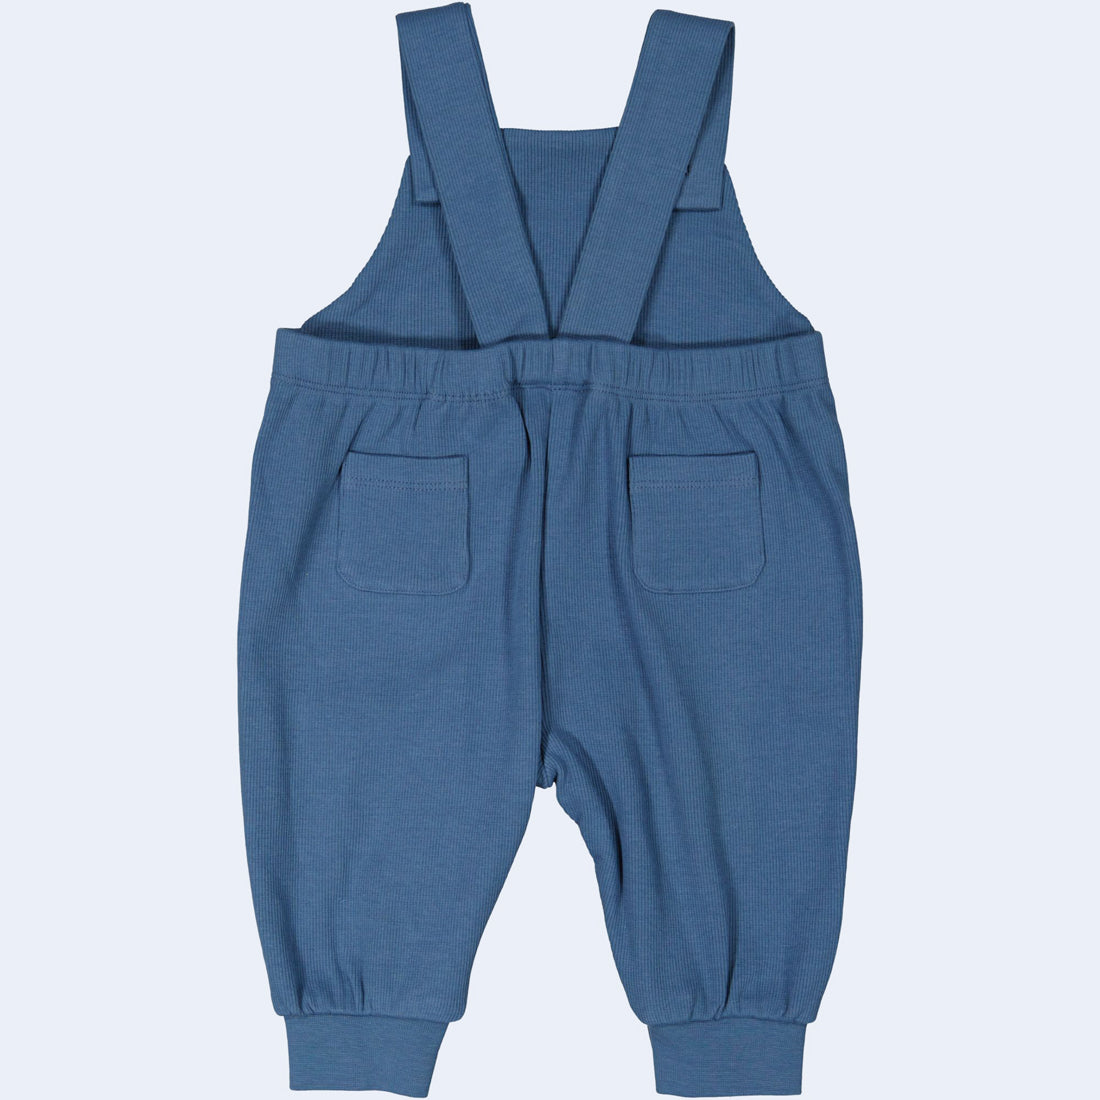 Geggamoja® Organic Cotton Baby/Kids Comfy Pants - SOLID LIGHT BLUE wit –  Danish Woolen Delight